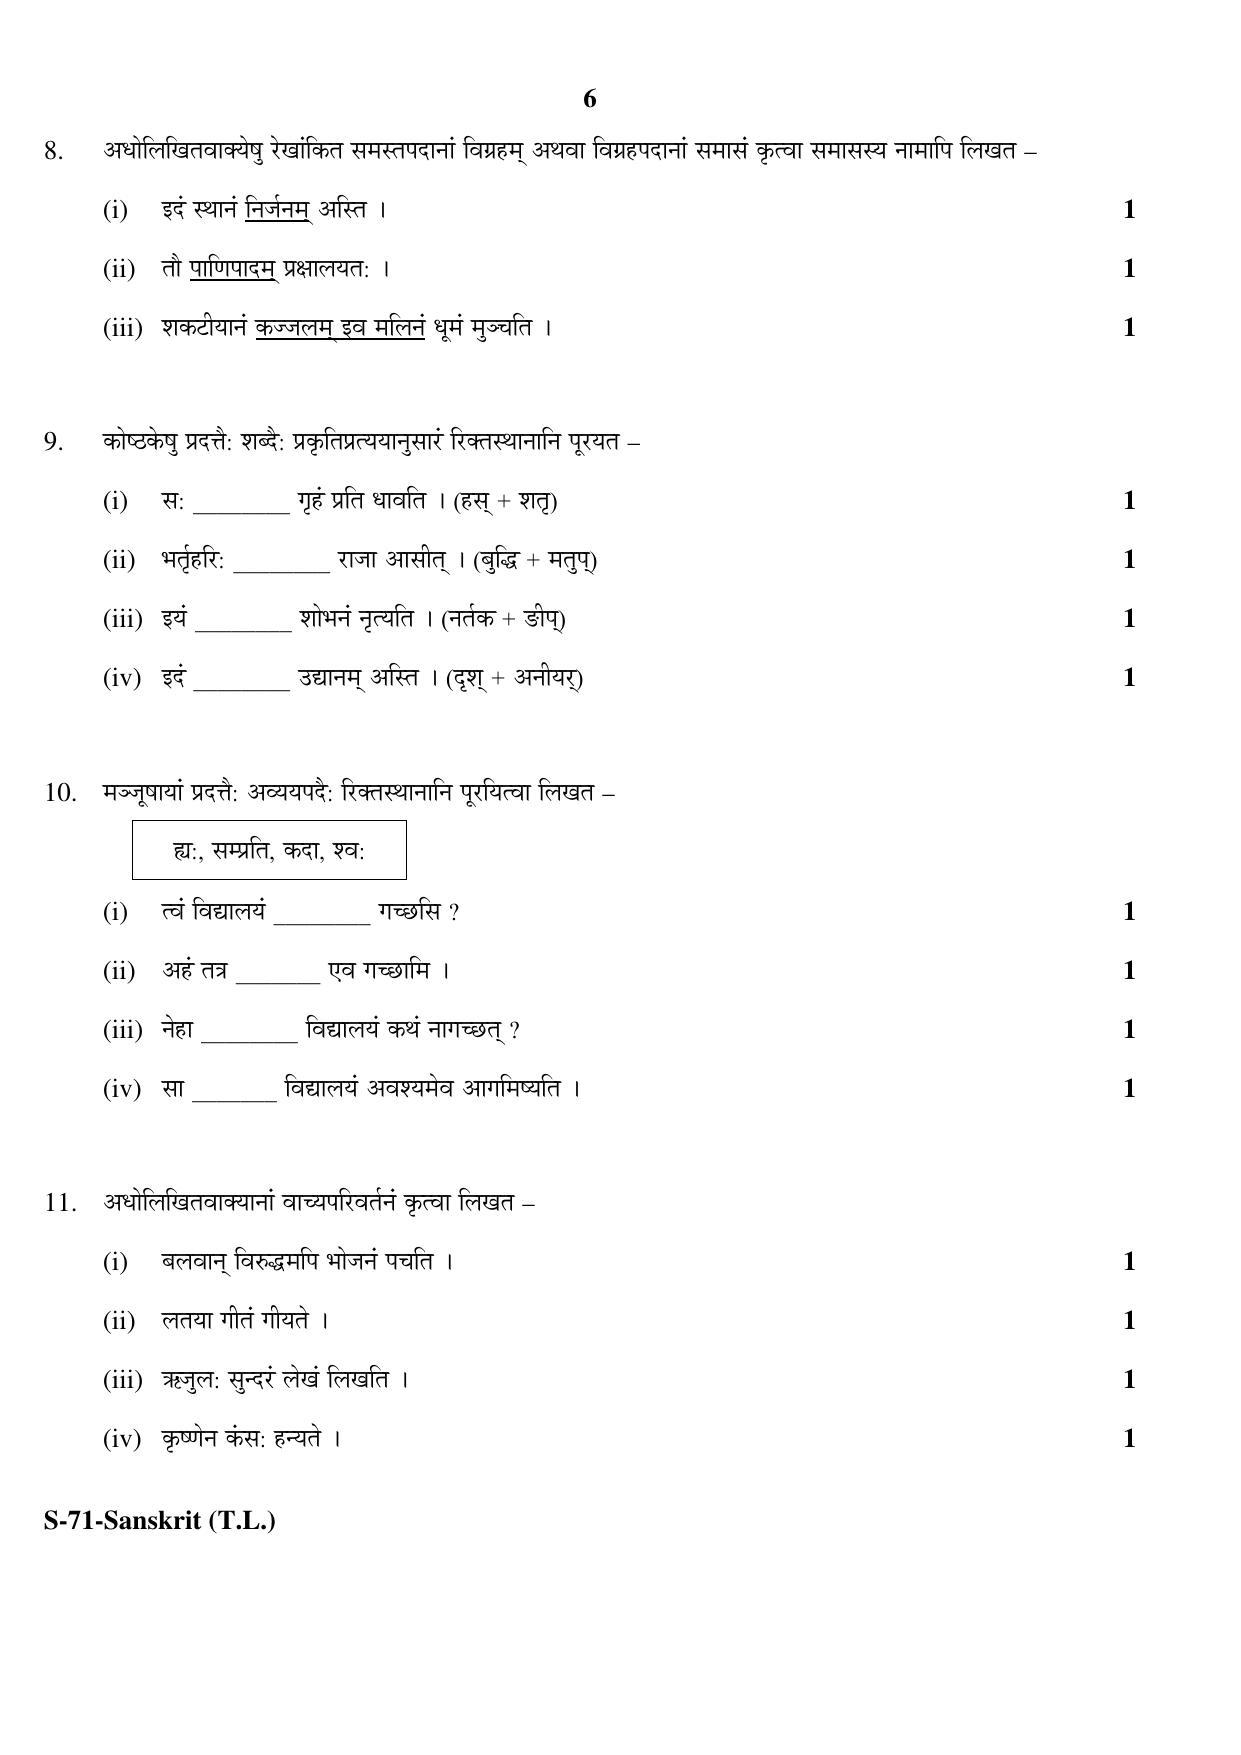 RBSE Class 10 Sanskrit (T.L.) 2017 Question Paper - Page 6